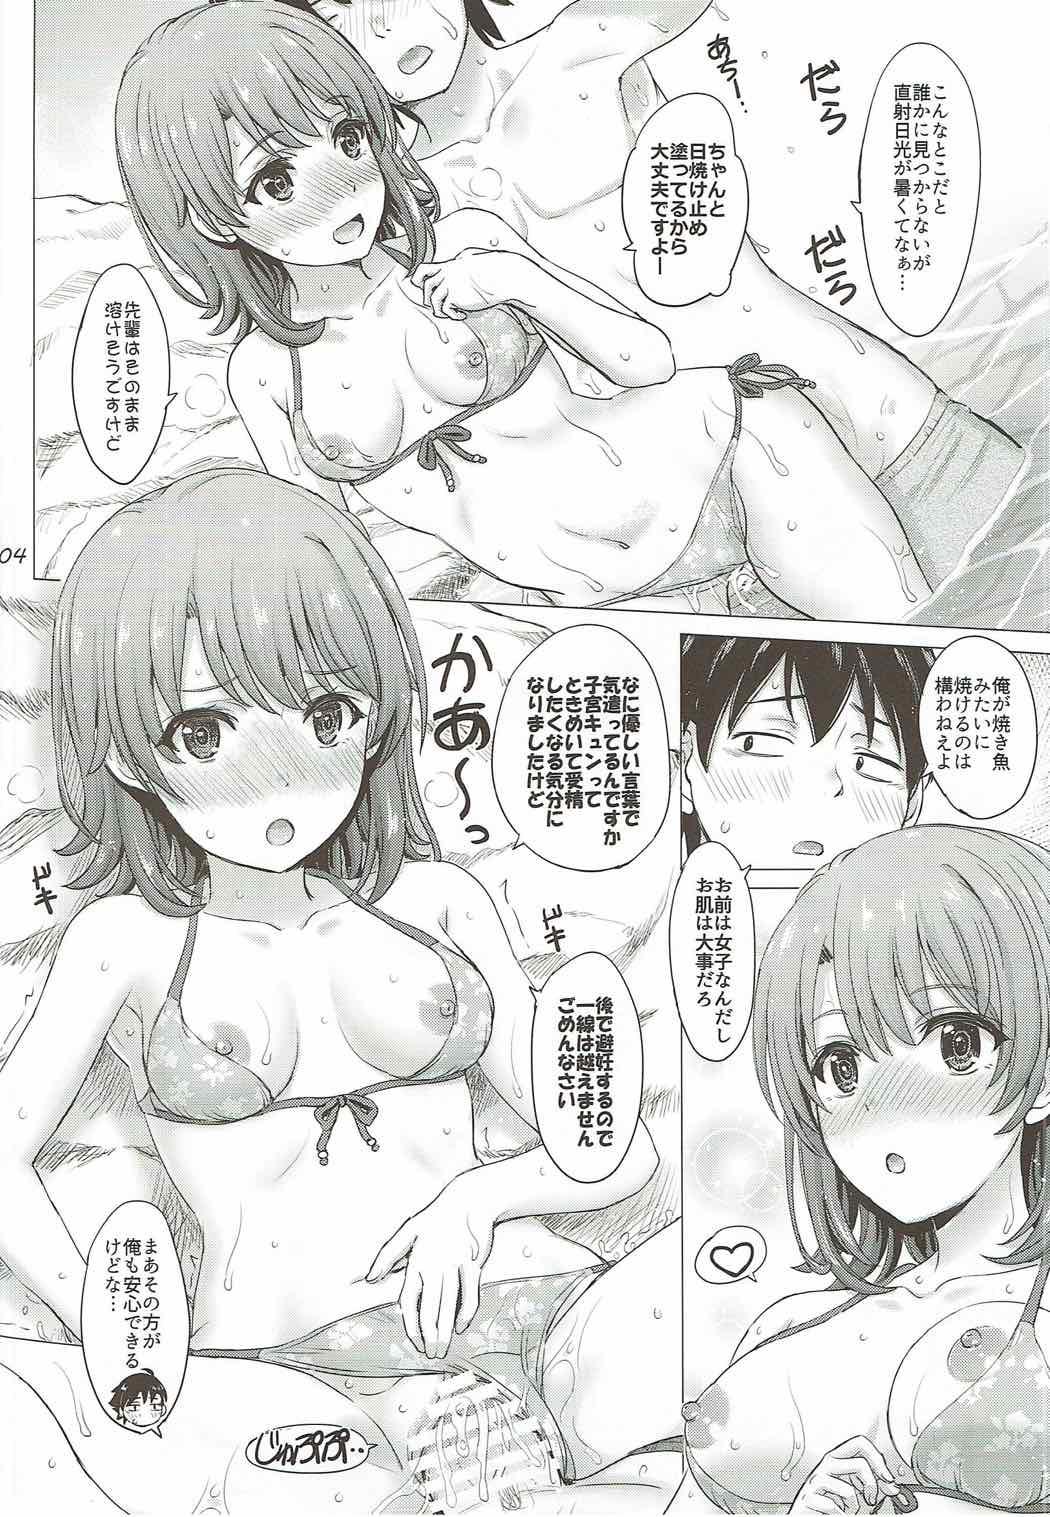 Couple Porn Isshiki Iroha no Iyarashii Natsuyasumi. - Yahari ore no seishun love come wa machigatteiru Casero - Page 3